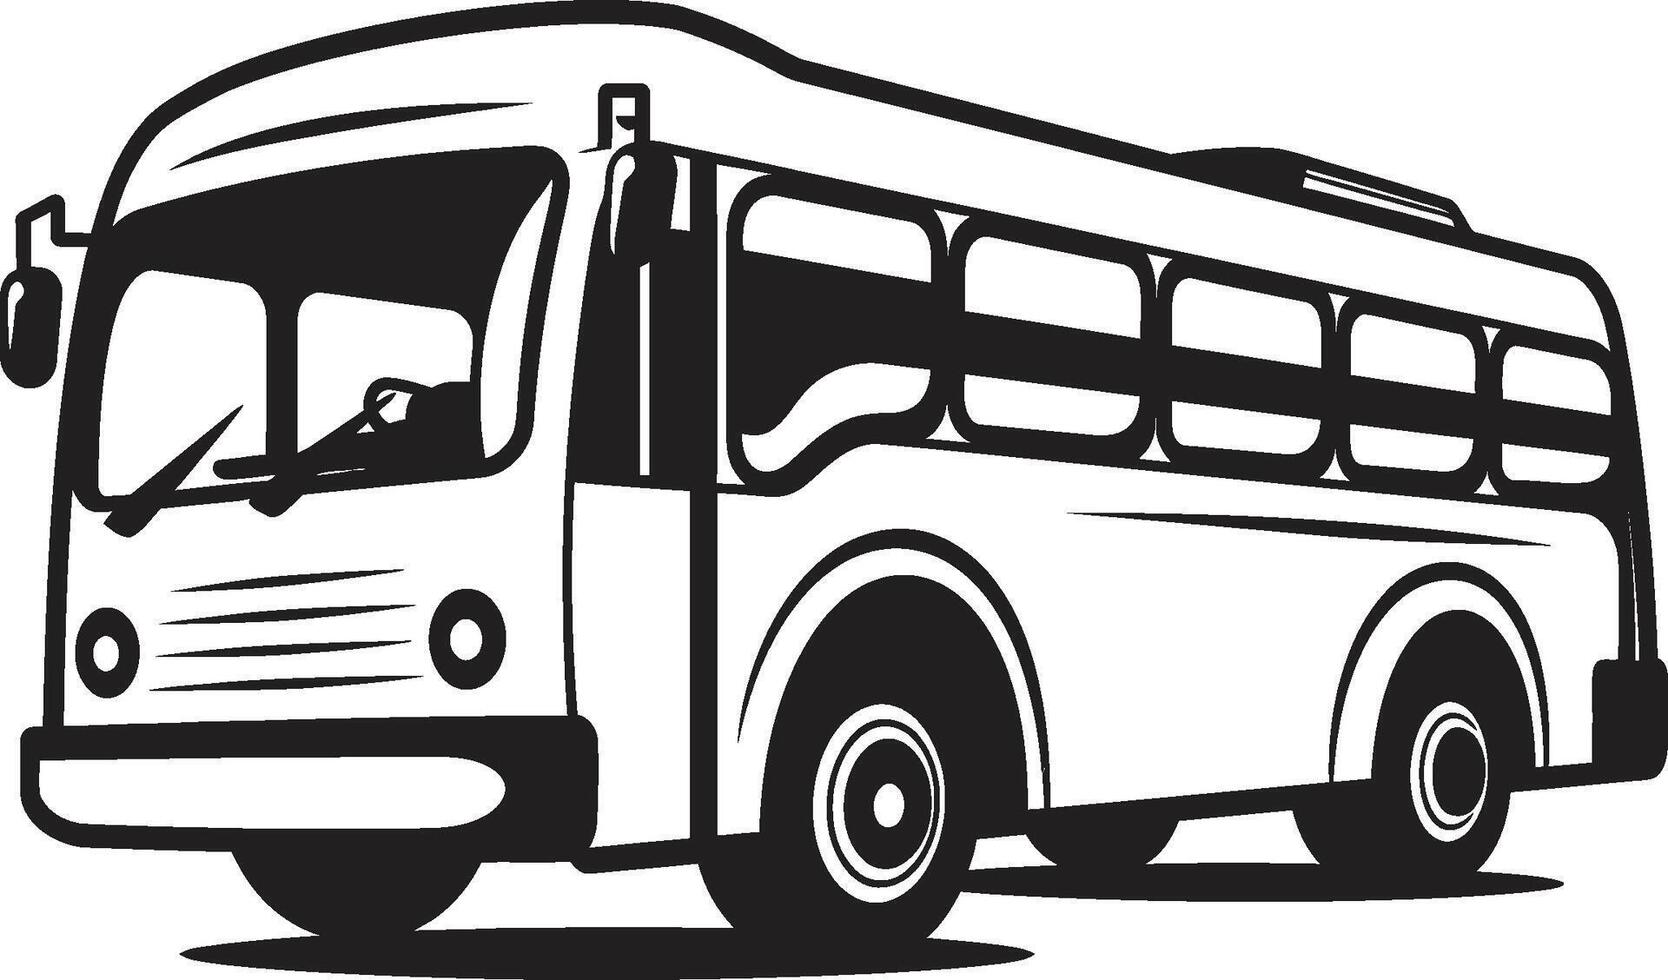 retro buss strålglans svartvit ikon ikoniska genomresa svart vektor emblem